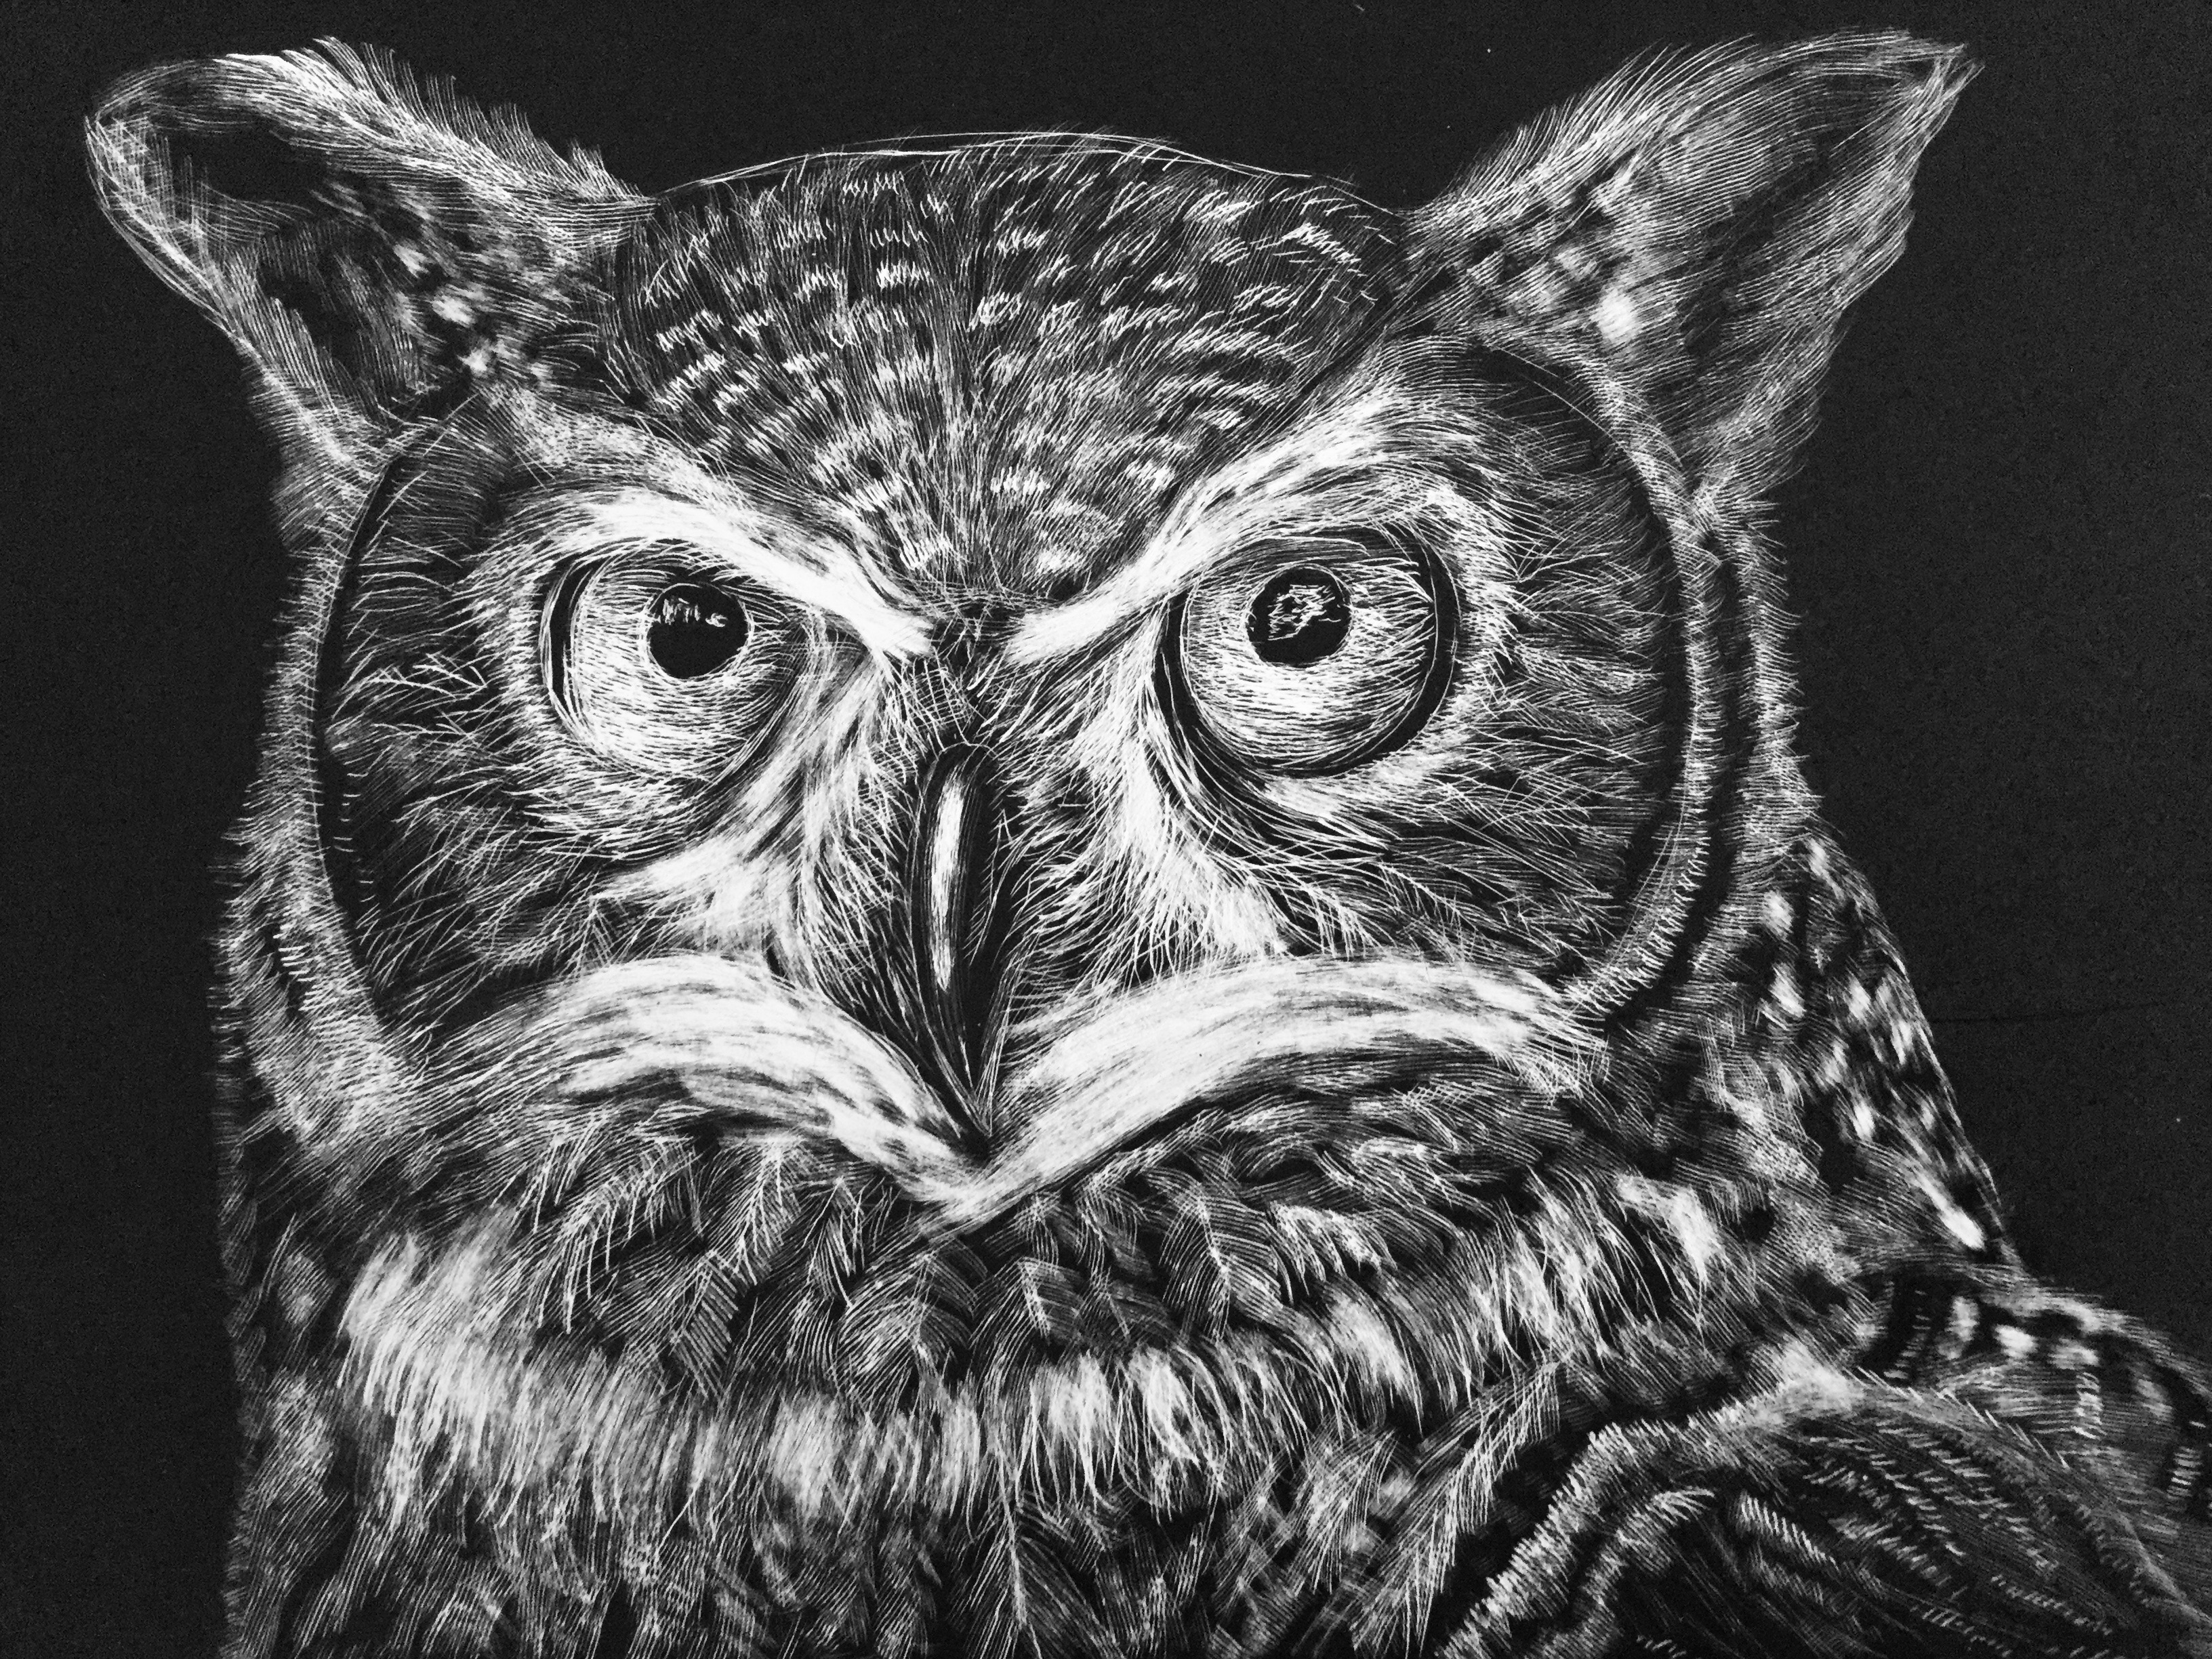 Owl scratchboard art by Aceliight on DeviantArt